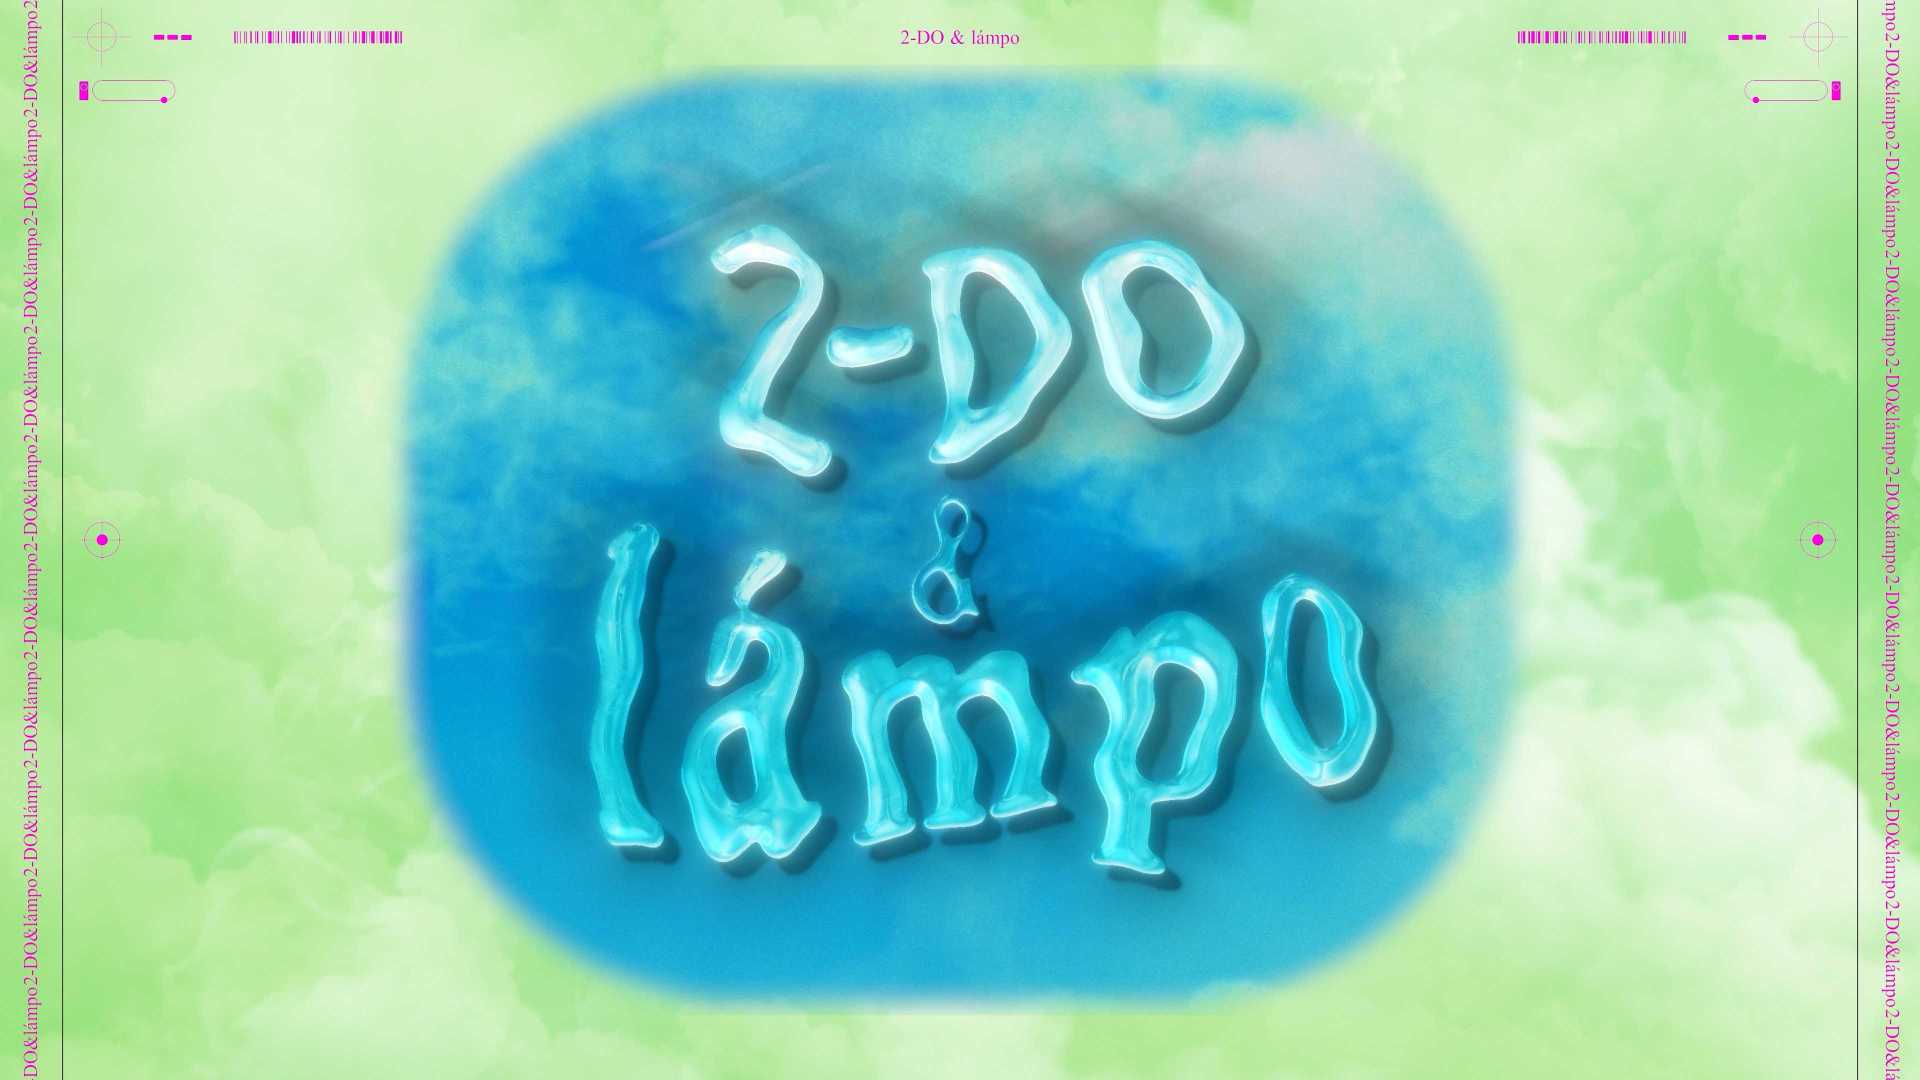 2-DO & Lampo —LIVE VJ LOOP